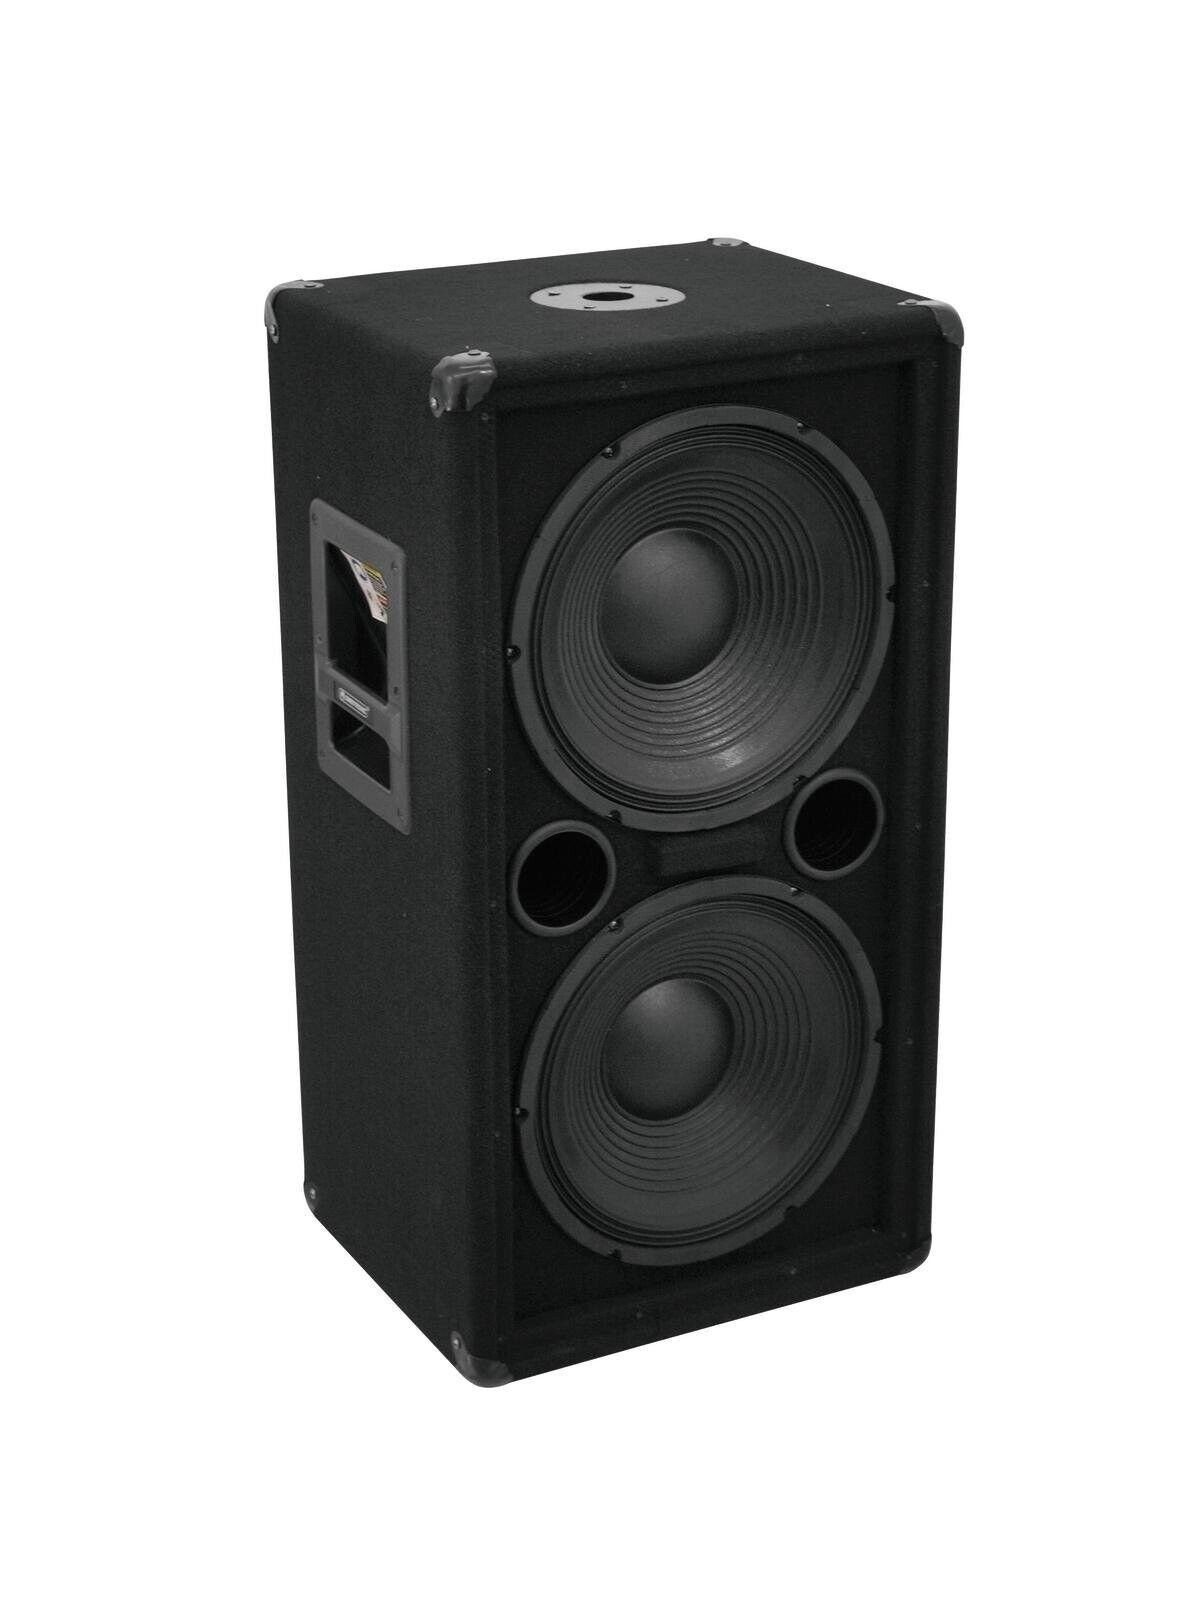 DSX Das PA-SET 22502 Powermixer Subwoofer Musik Anlage W) Boxen (1400 Party-Lautsprecher